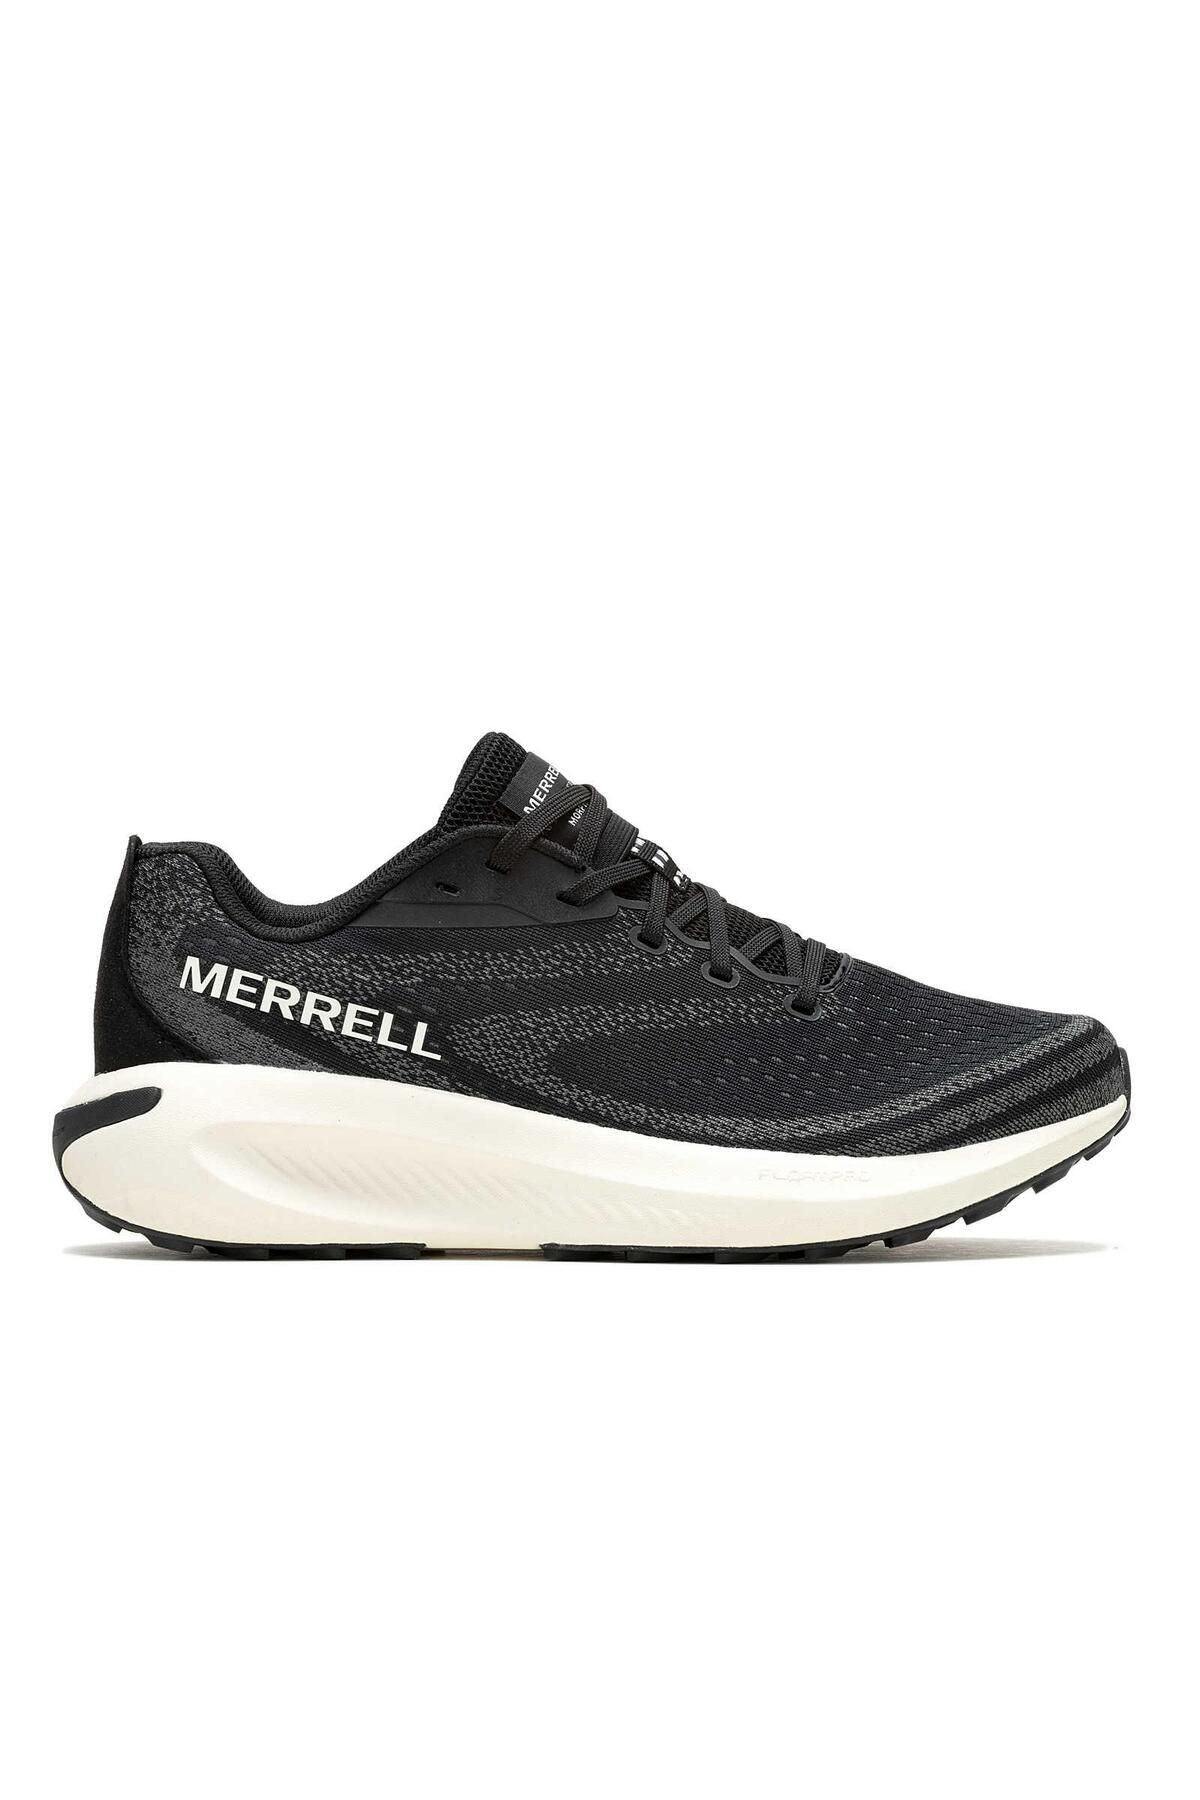 Merrell Morphlite Kadın Koşu Ayakkabısı